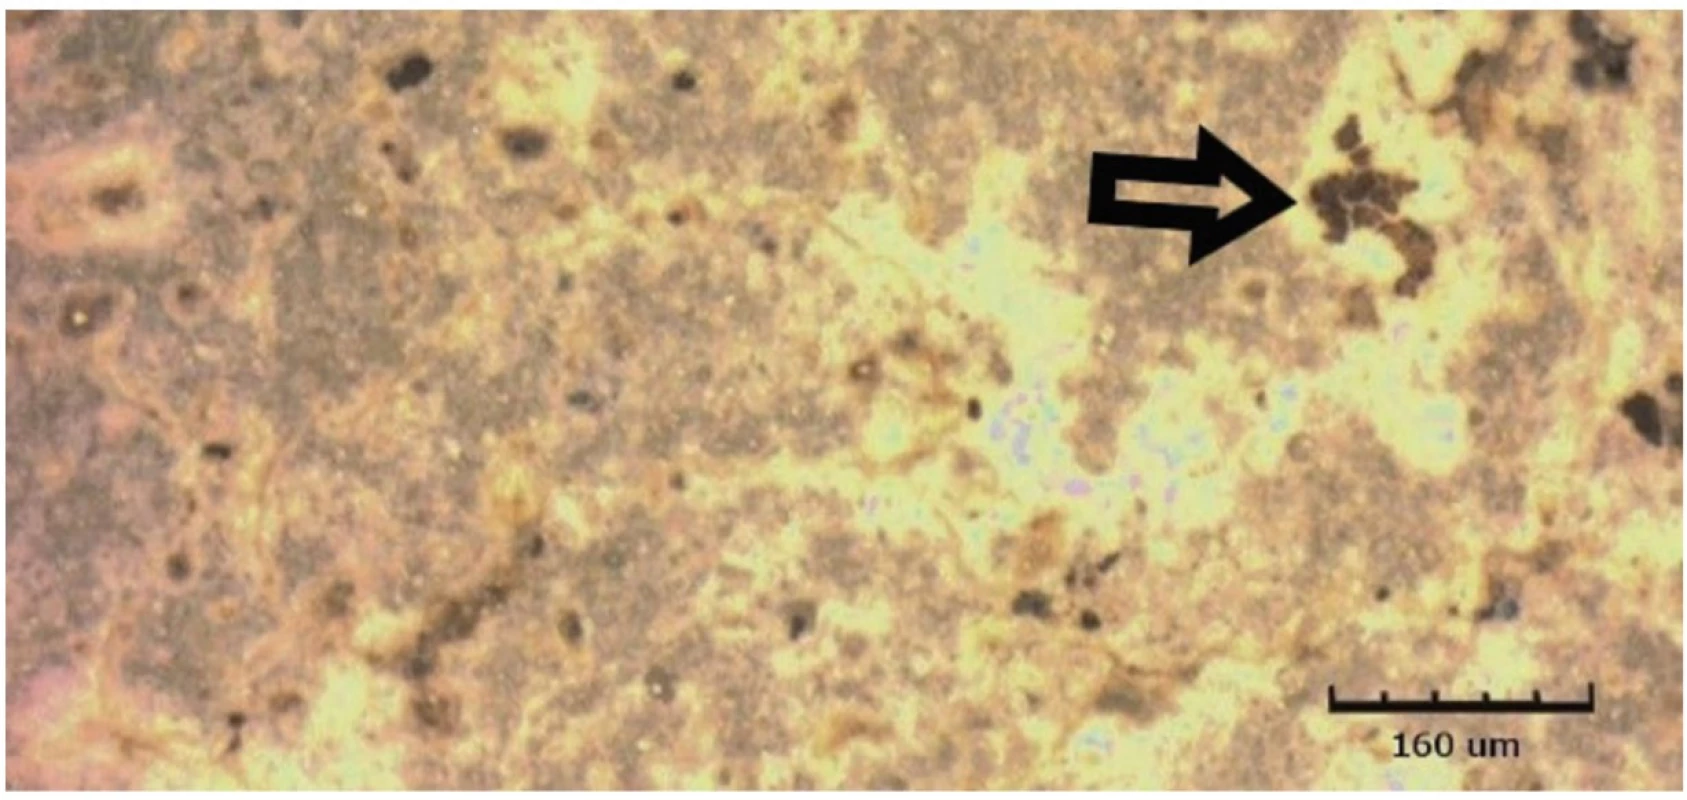 Omnifill C vystavený kyselému pH po dobu 14 dnů, zobrazeno CLSM<br>
Fig. 8 Omnifill C exposed to acidic pH for 14 days, shown by CLSM